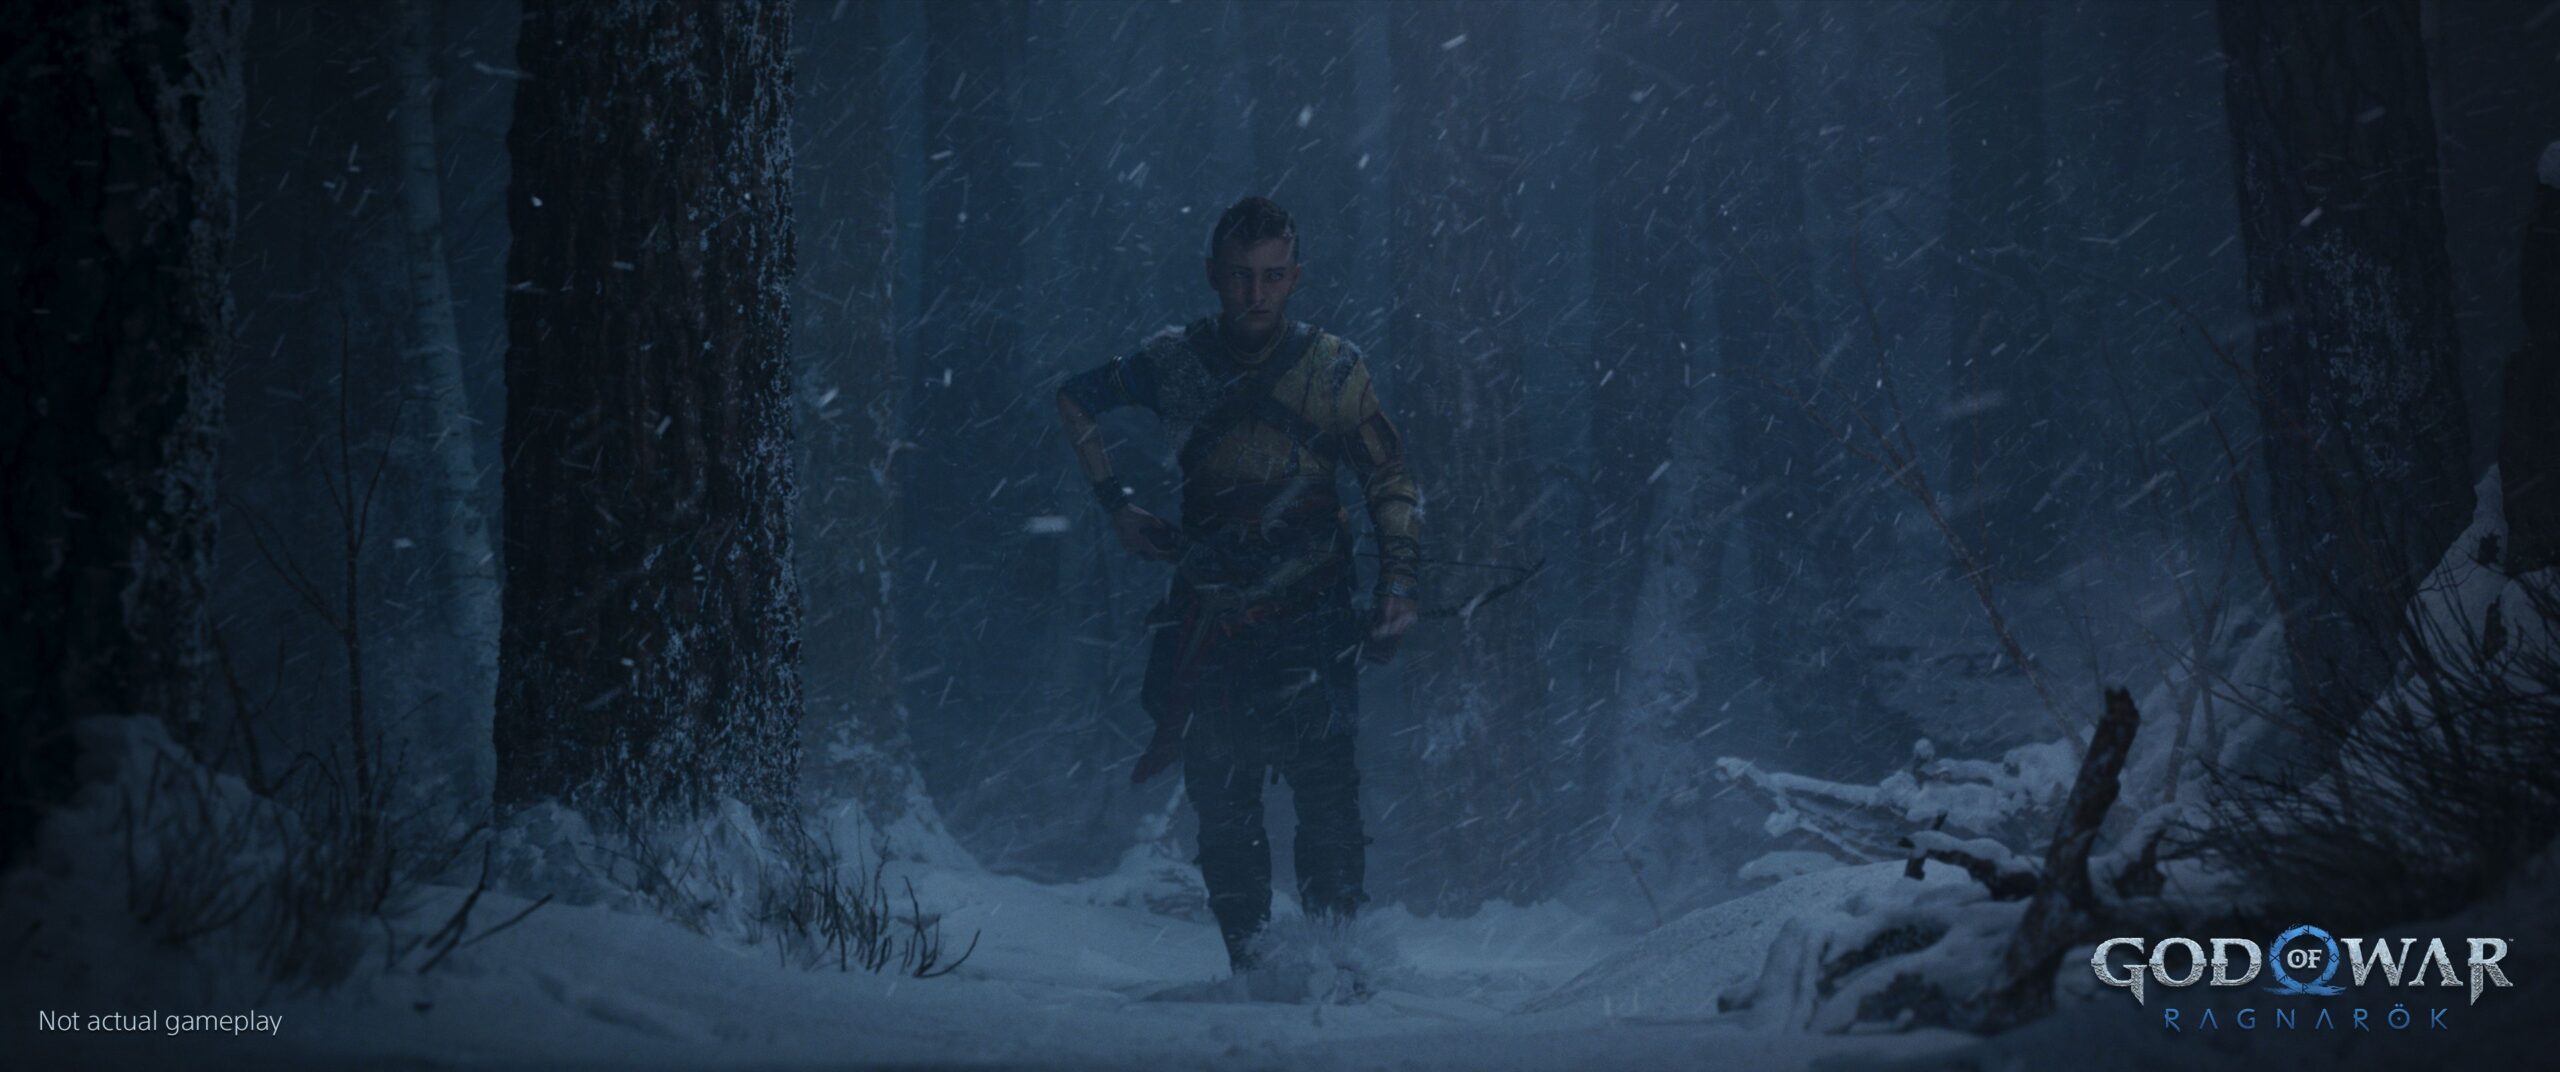 God of War Ragnarok ganha data de lançamento e novo trailer